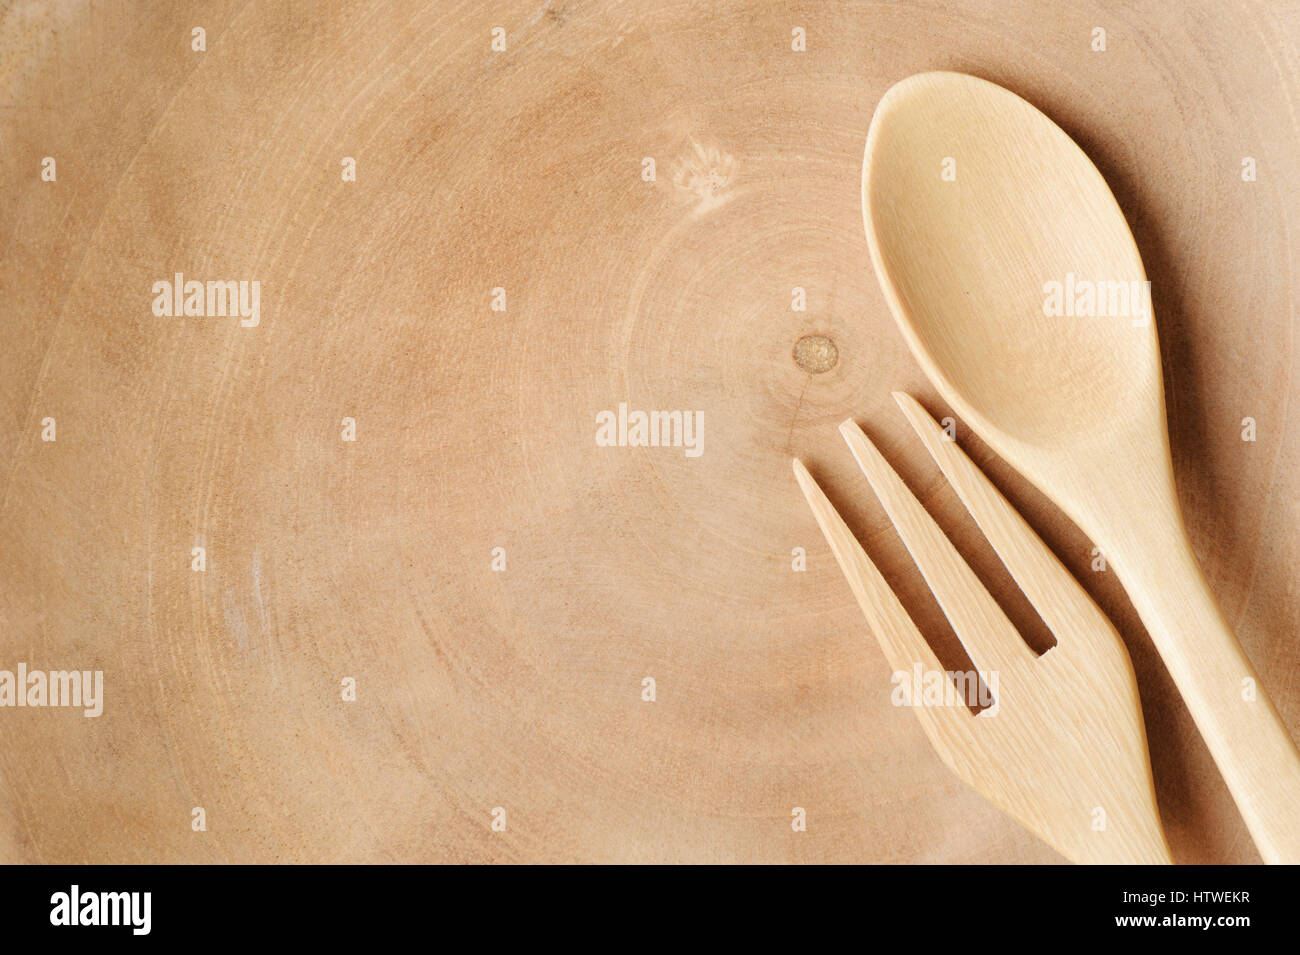 Il cucchiaio di legno e la forcella sulla piastra in legno, prodotti in legno Foto Stock